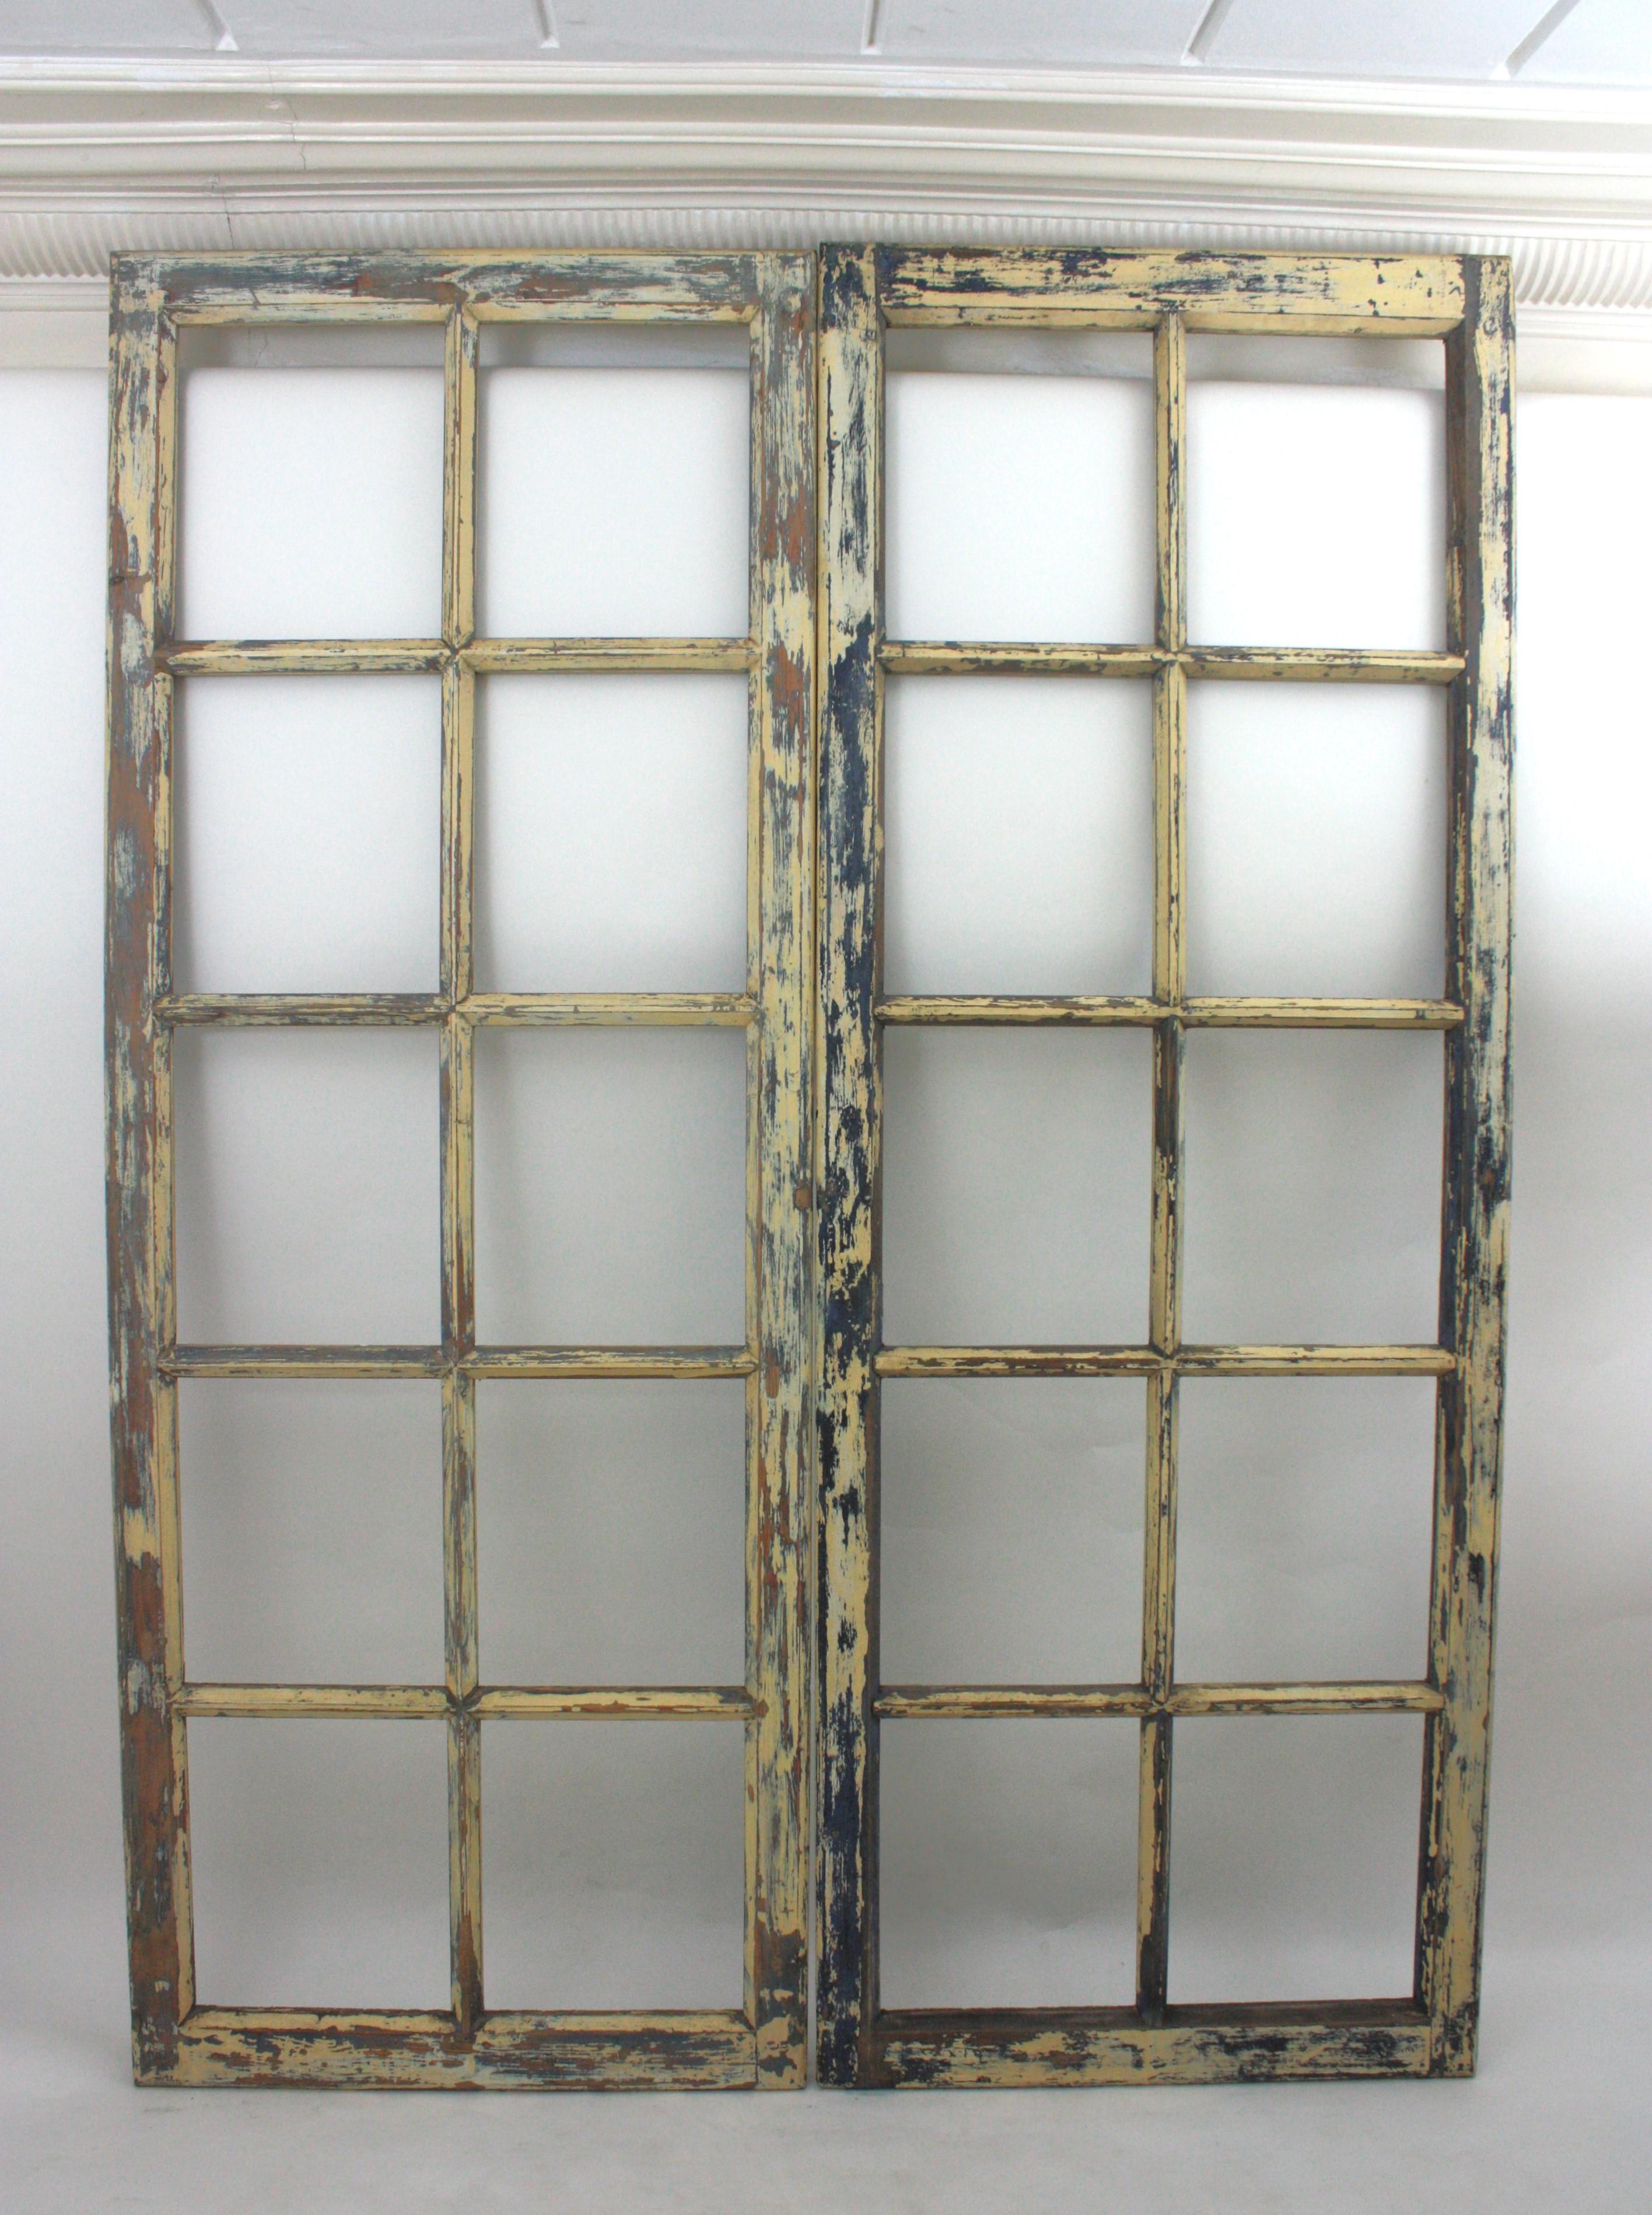 Fenêtres anciennes en bois à panneaux d'usine à utiliser comme fenêtres ou portes, Espagne, années 1930-1940.
Paire de fenêtres industrielles en bois peintes en bleu et écru avec panneaux à utiliser comme portes, fenêtres  ou décoration murale.
Ces